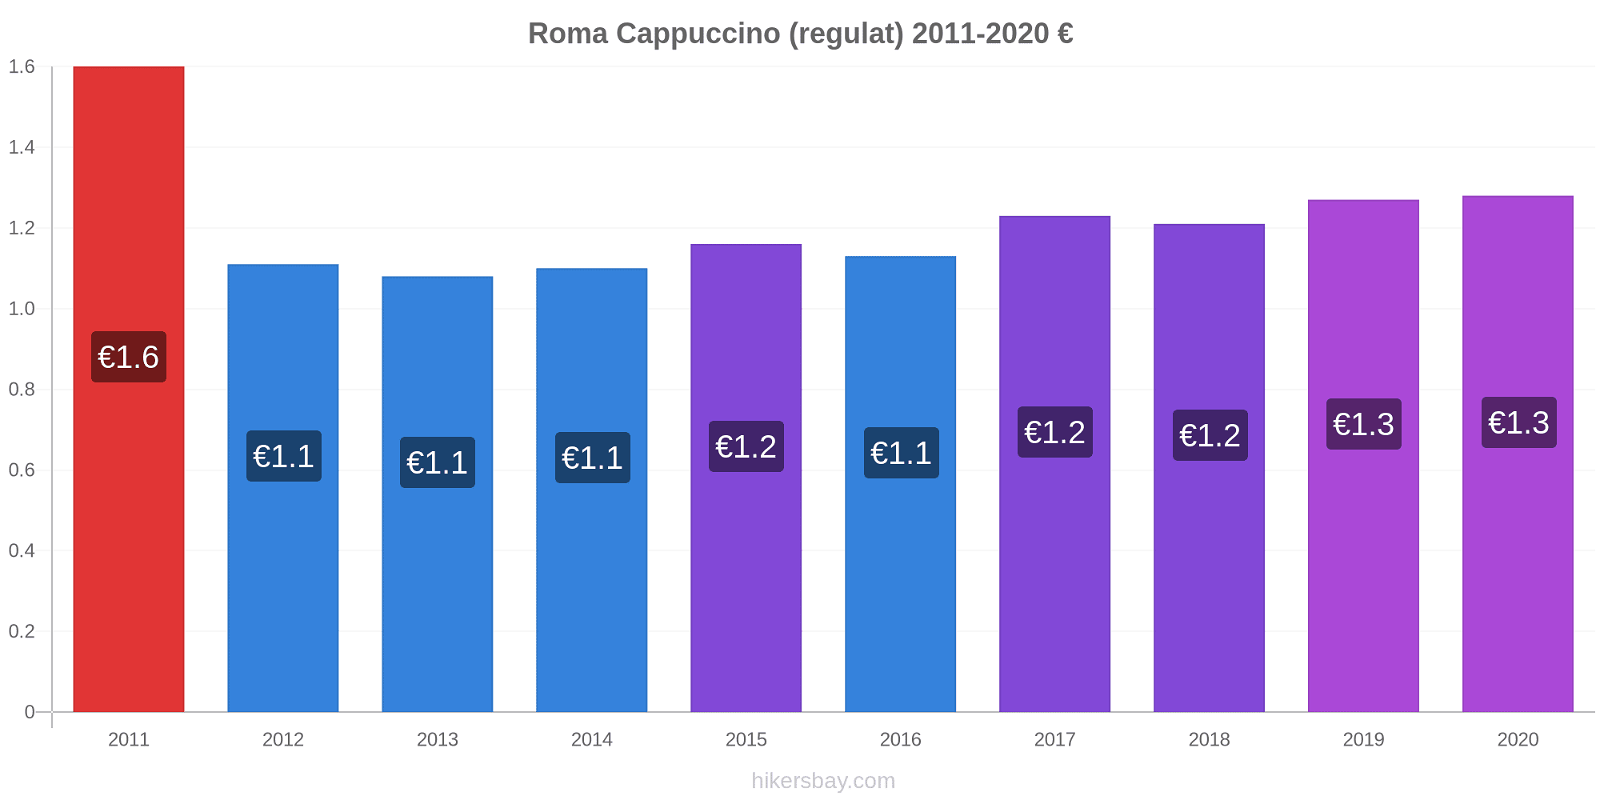 Roma modificări de preț Cappuccino (regulat) hikersbay.com